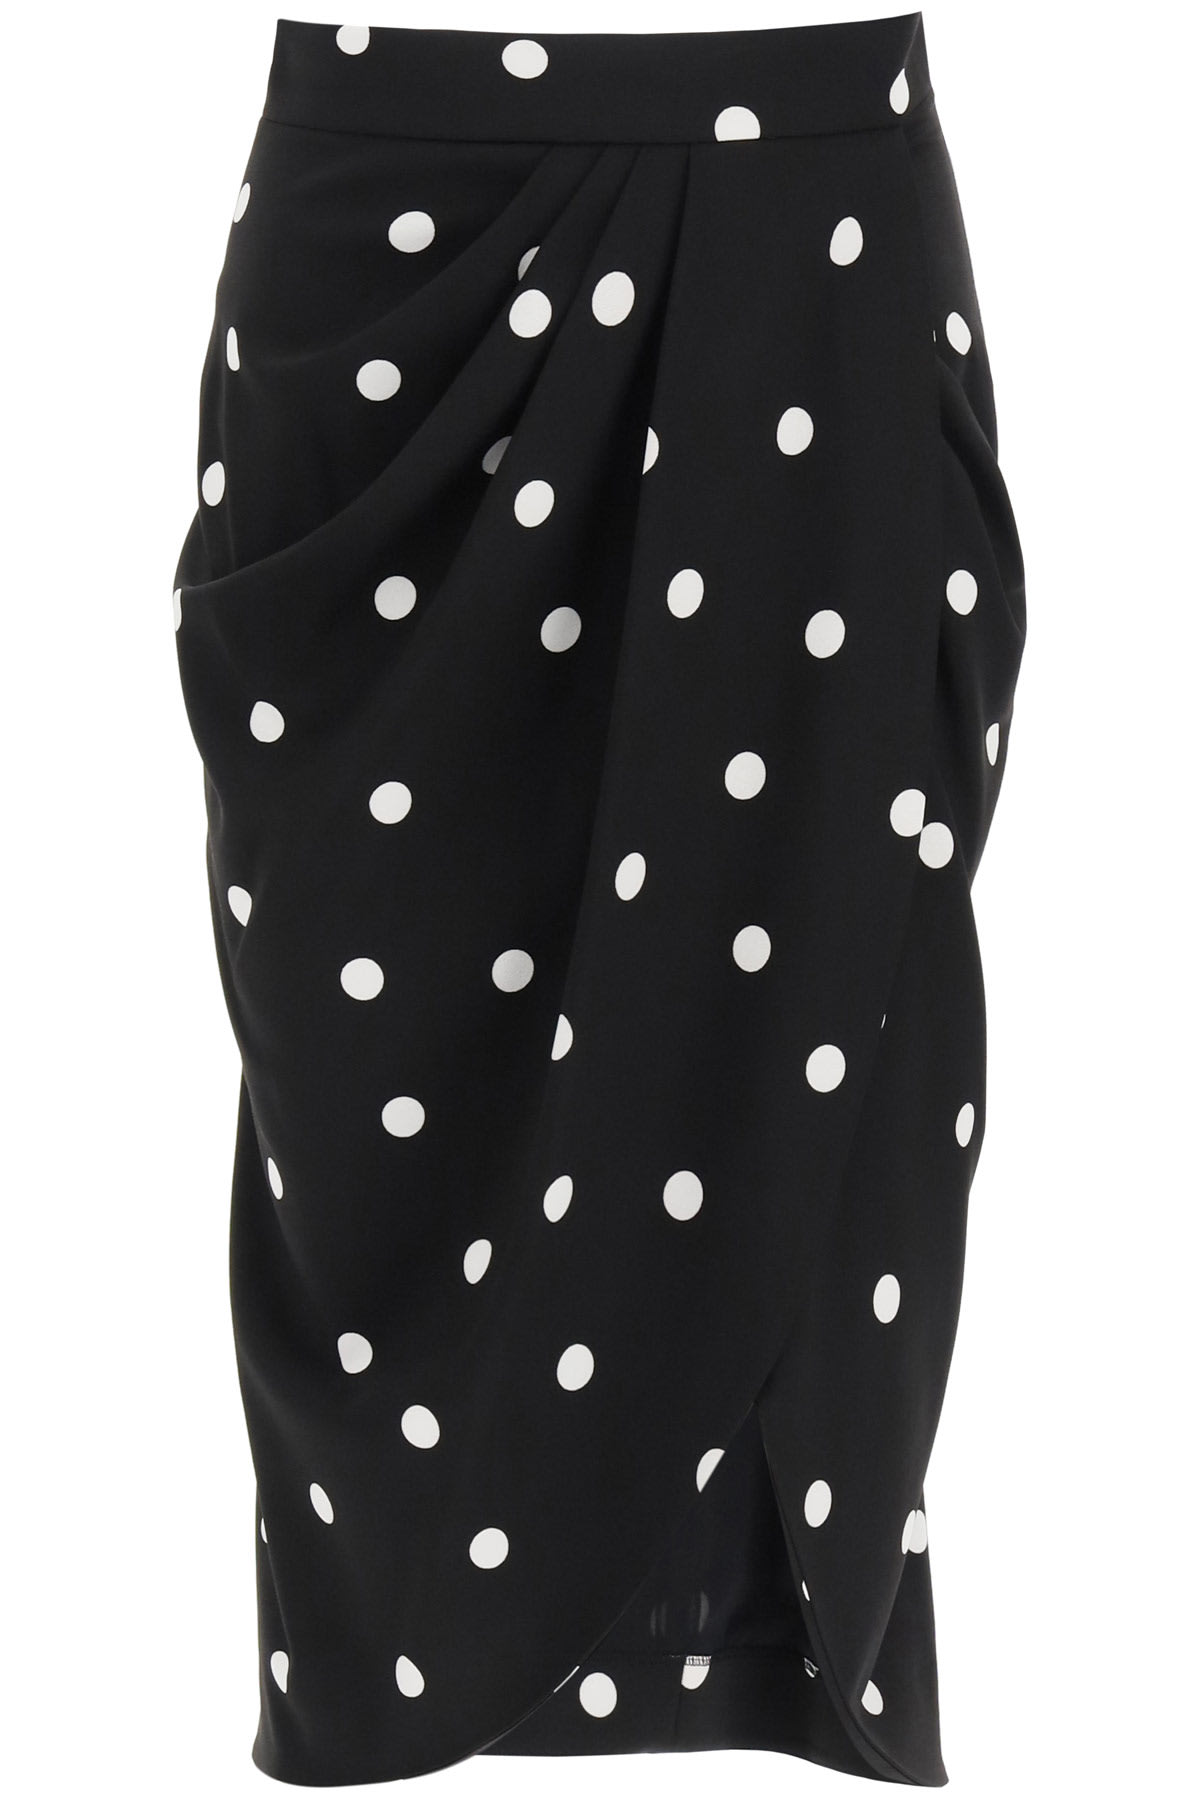 Dolce & Gabbana Polka Dot Midi Skirt